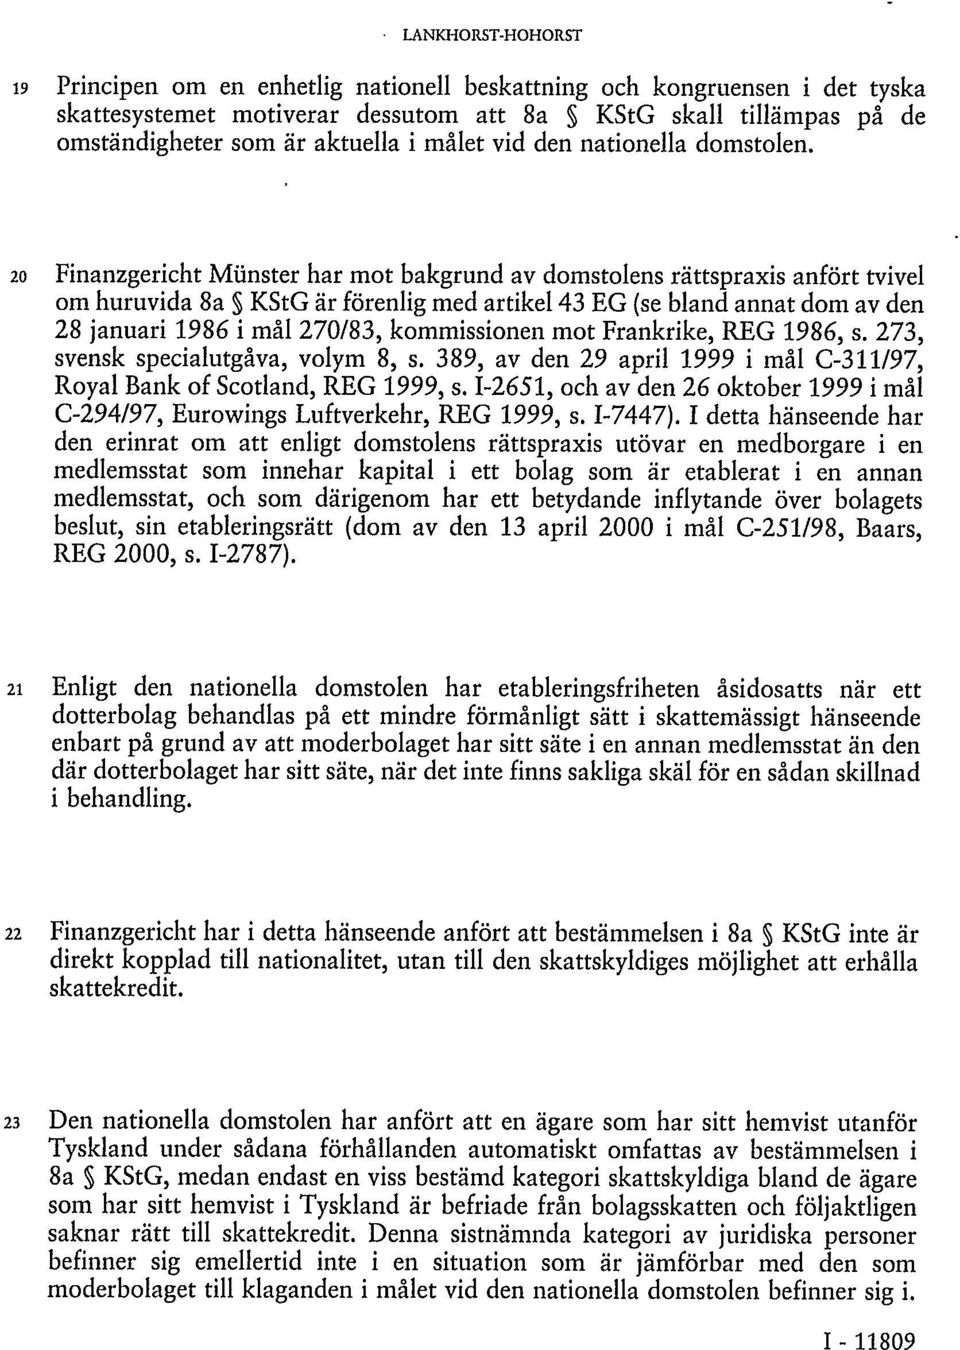 20 Finanzgericht Münster har mot bakgrund av domstolens rättspraxis anfört tvivel om huruvida 8a KStG är förenlig med artikel 43 EG (se bland annat dom av den 28 januari 1986 i mål 270/83,